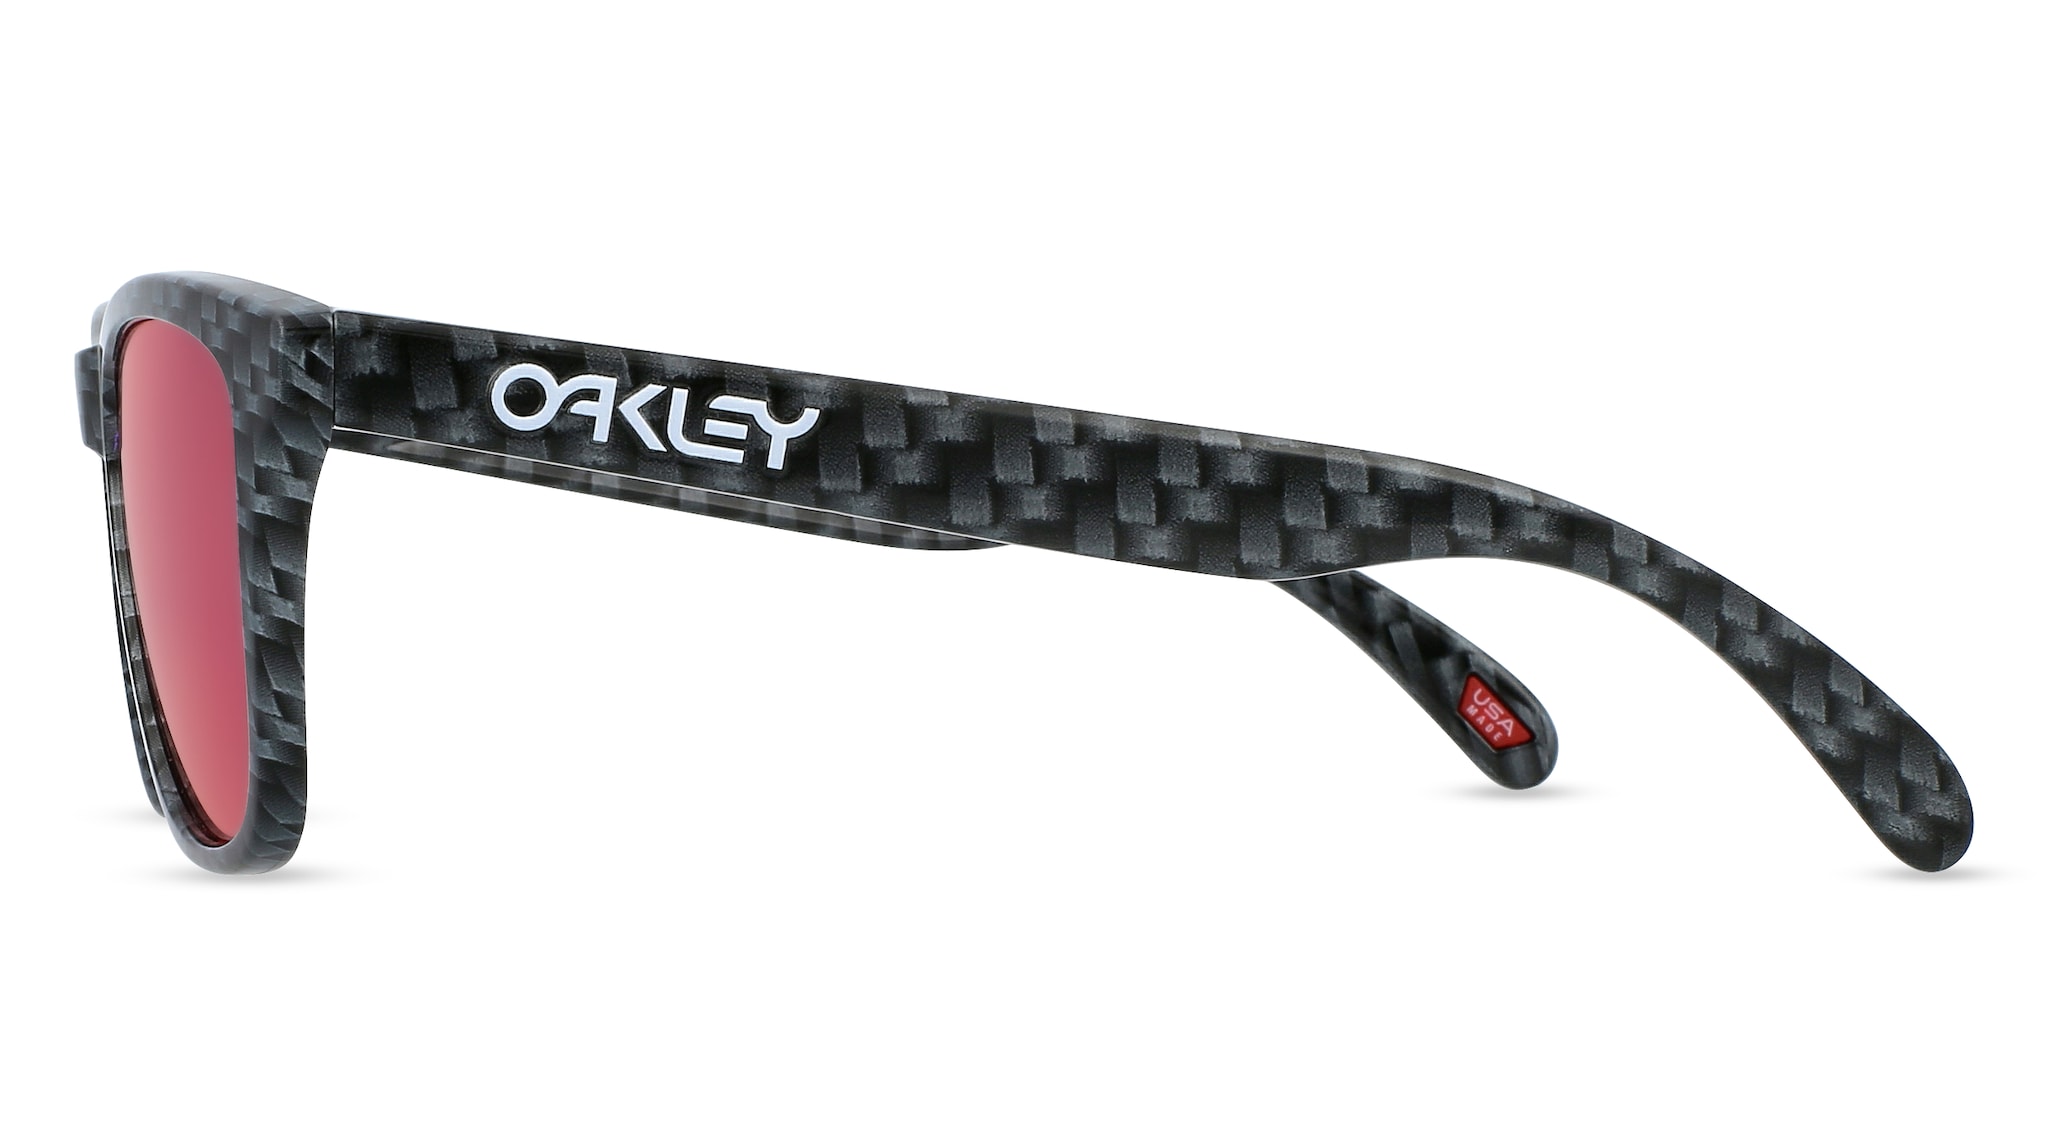 Oakley OO9013 FROGSKINS